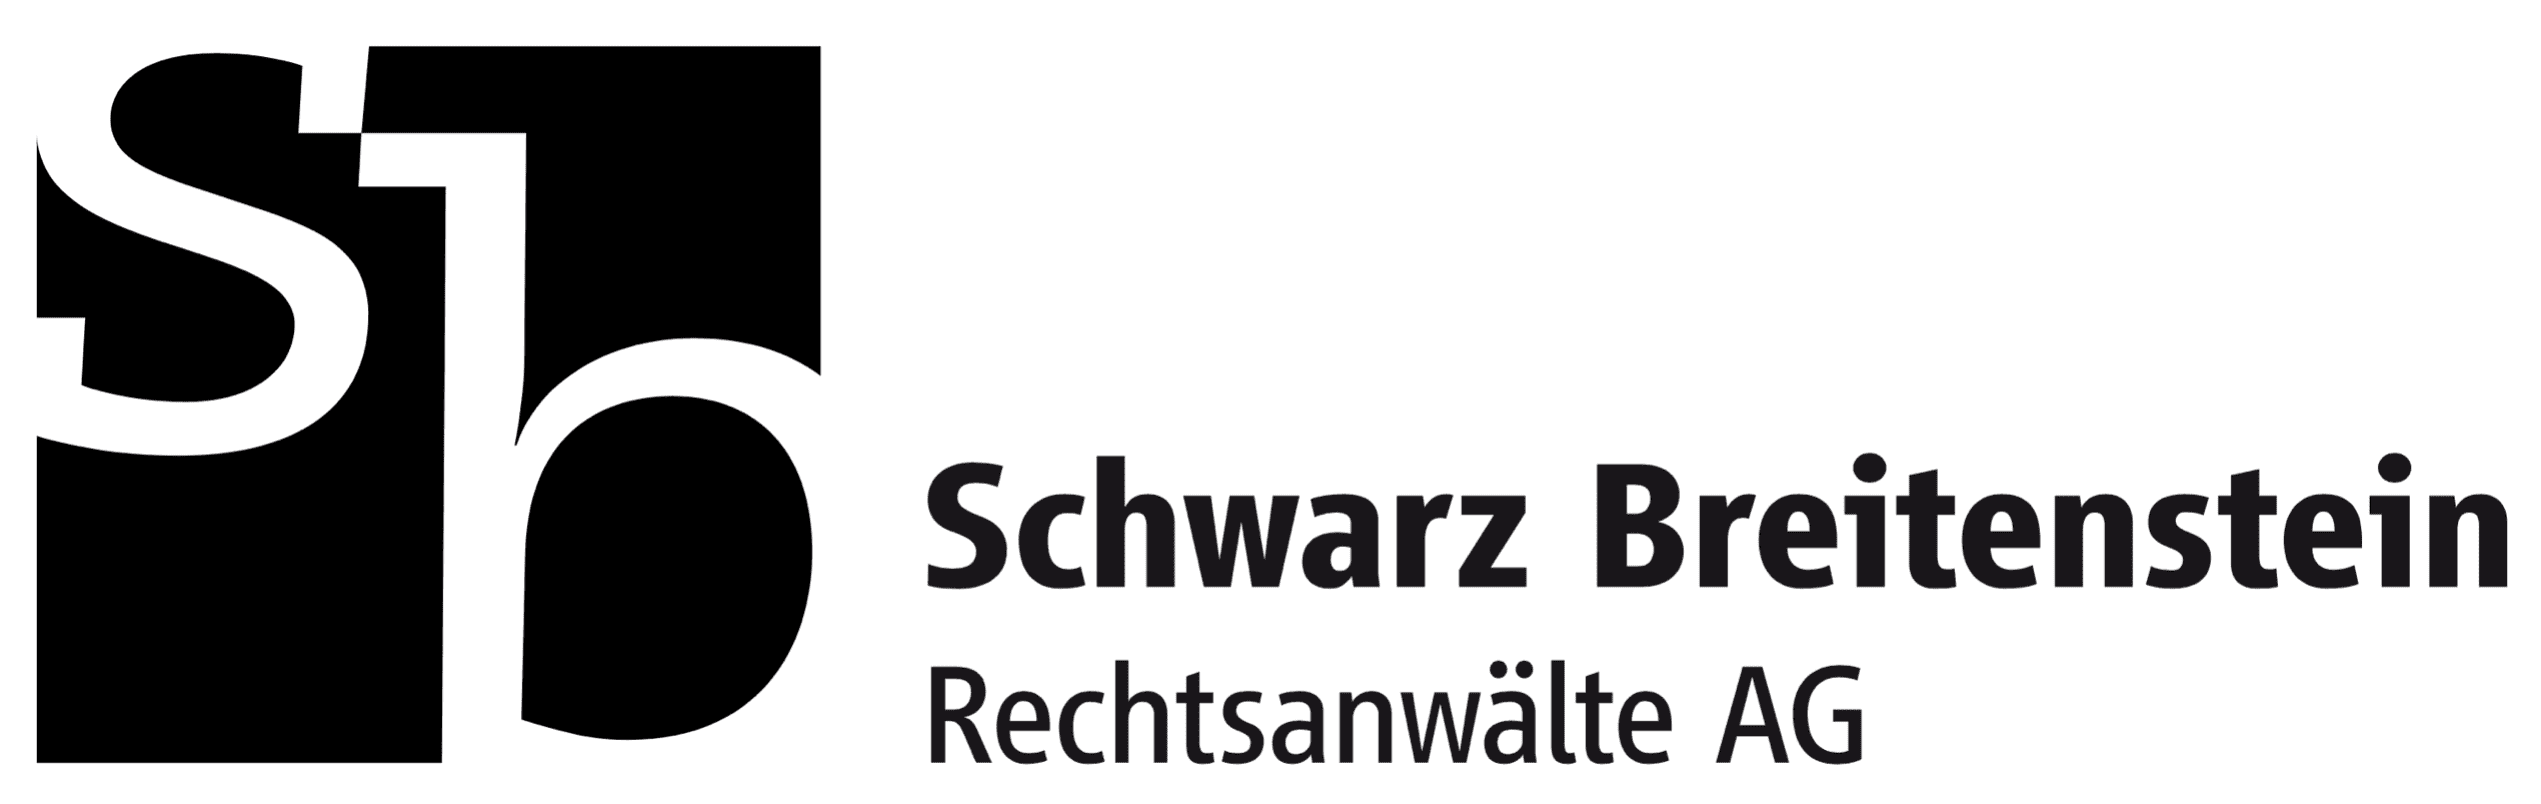 Schwarz Breitenstein Rechtsanwälte AG